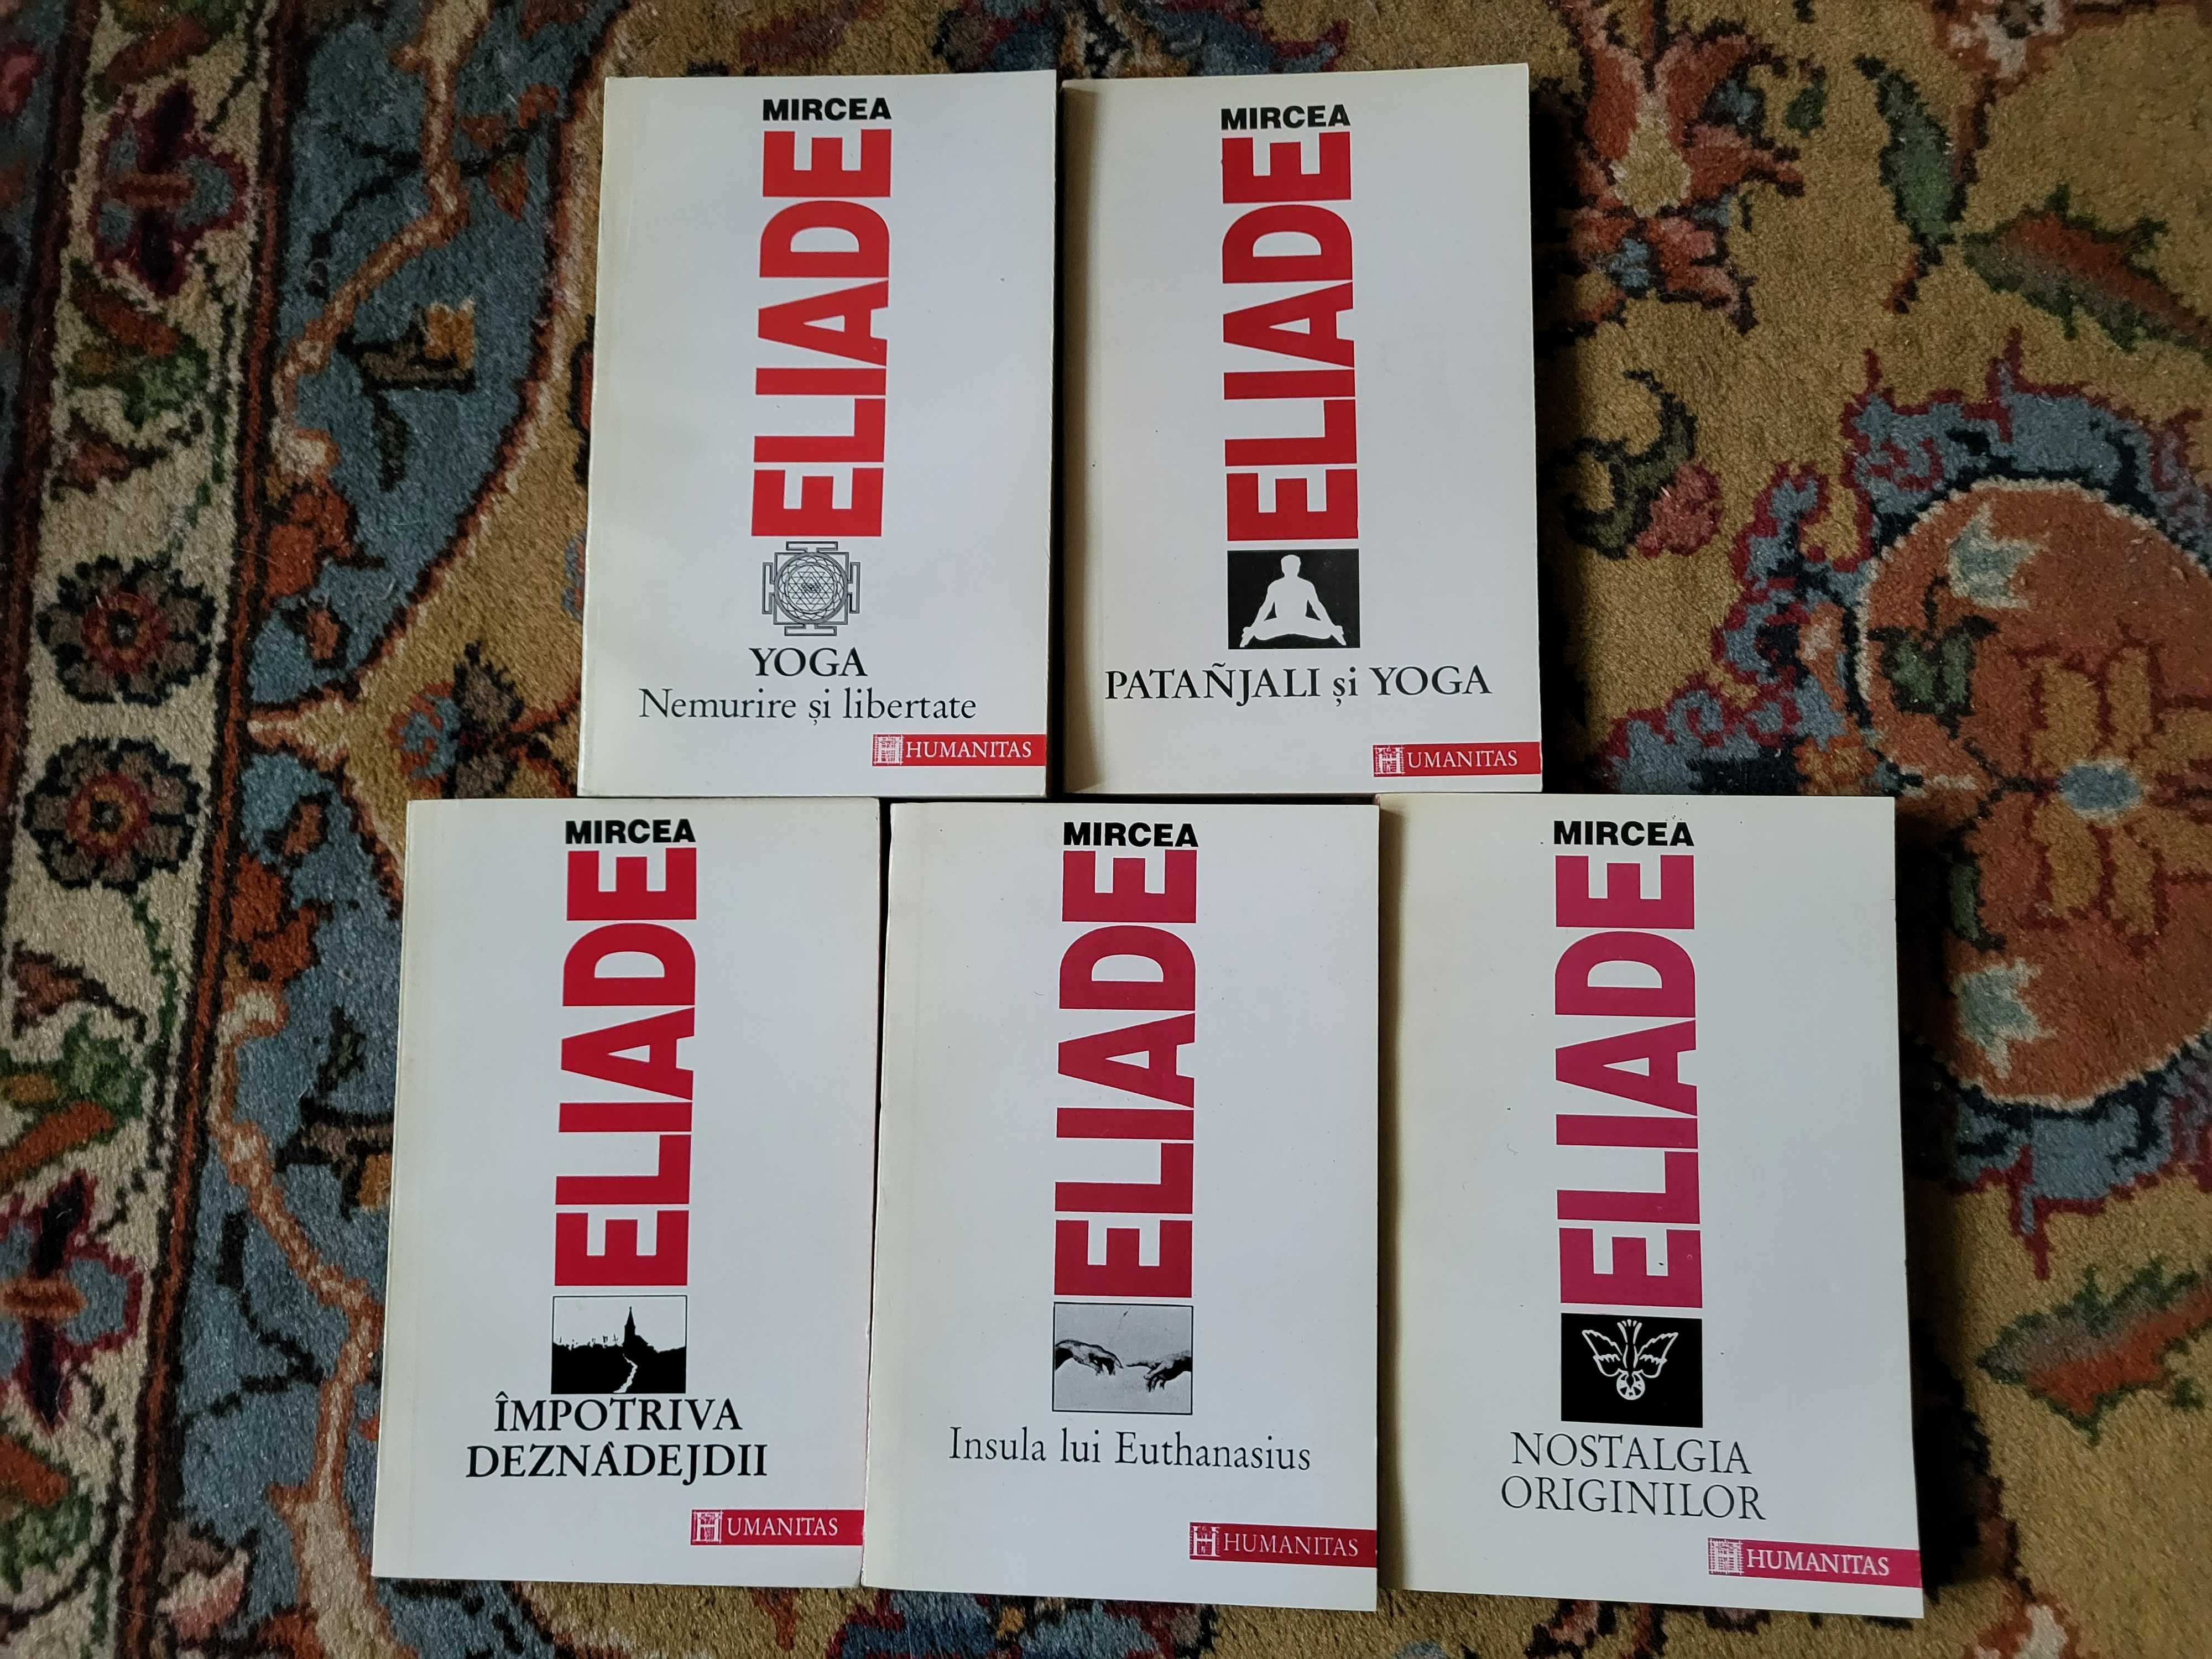 Colectie Mircea Eliade - Editura Humanitas